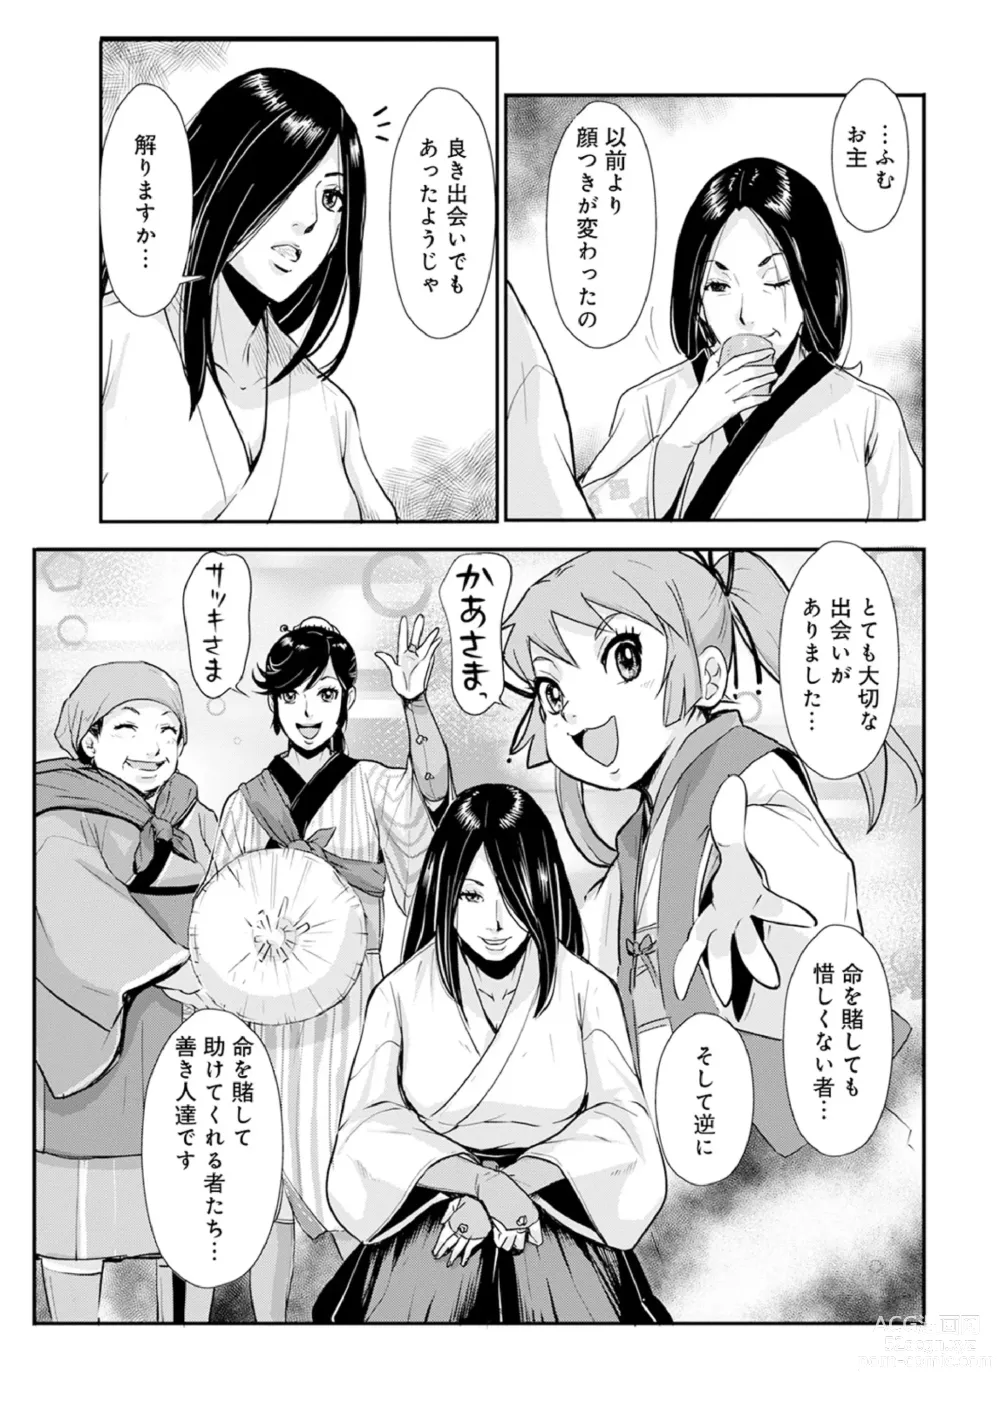 Page 5 of manga Harami samurai 12 ~Sekigan no Tosho no Nuresoboru Futanari no Kanjuku Dankon Nyotai~